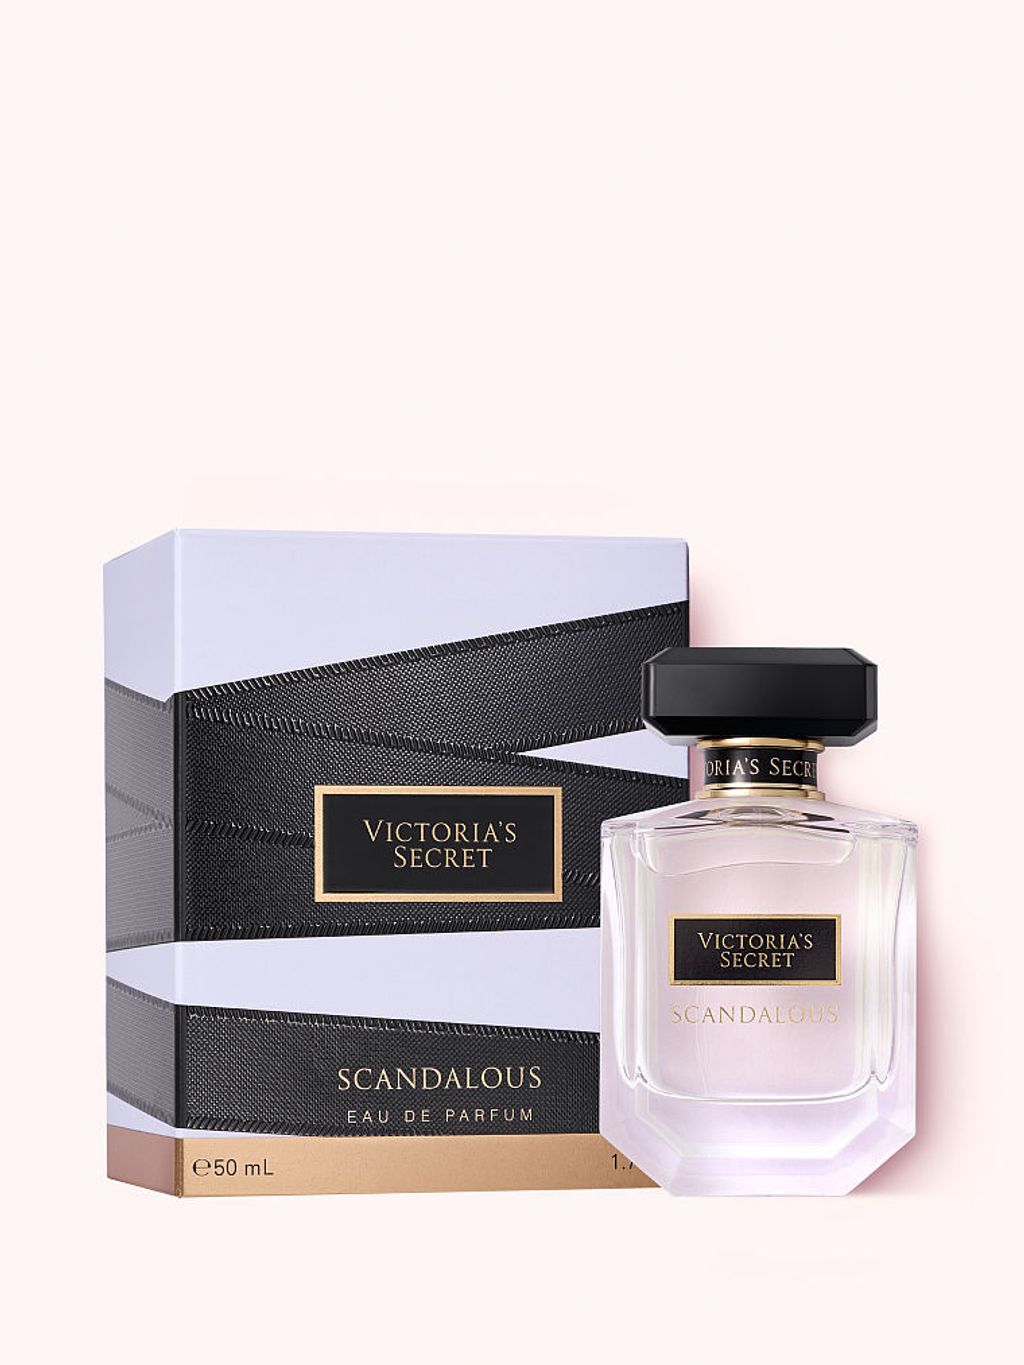 vs Eau de Parfum $12.4 w tax scandolous 1